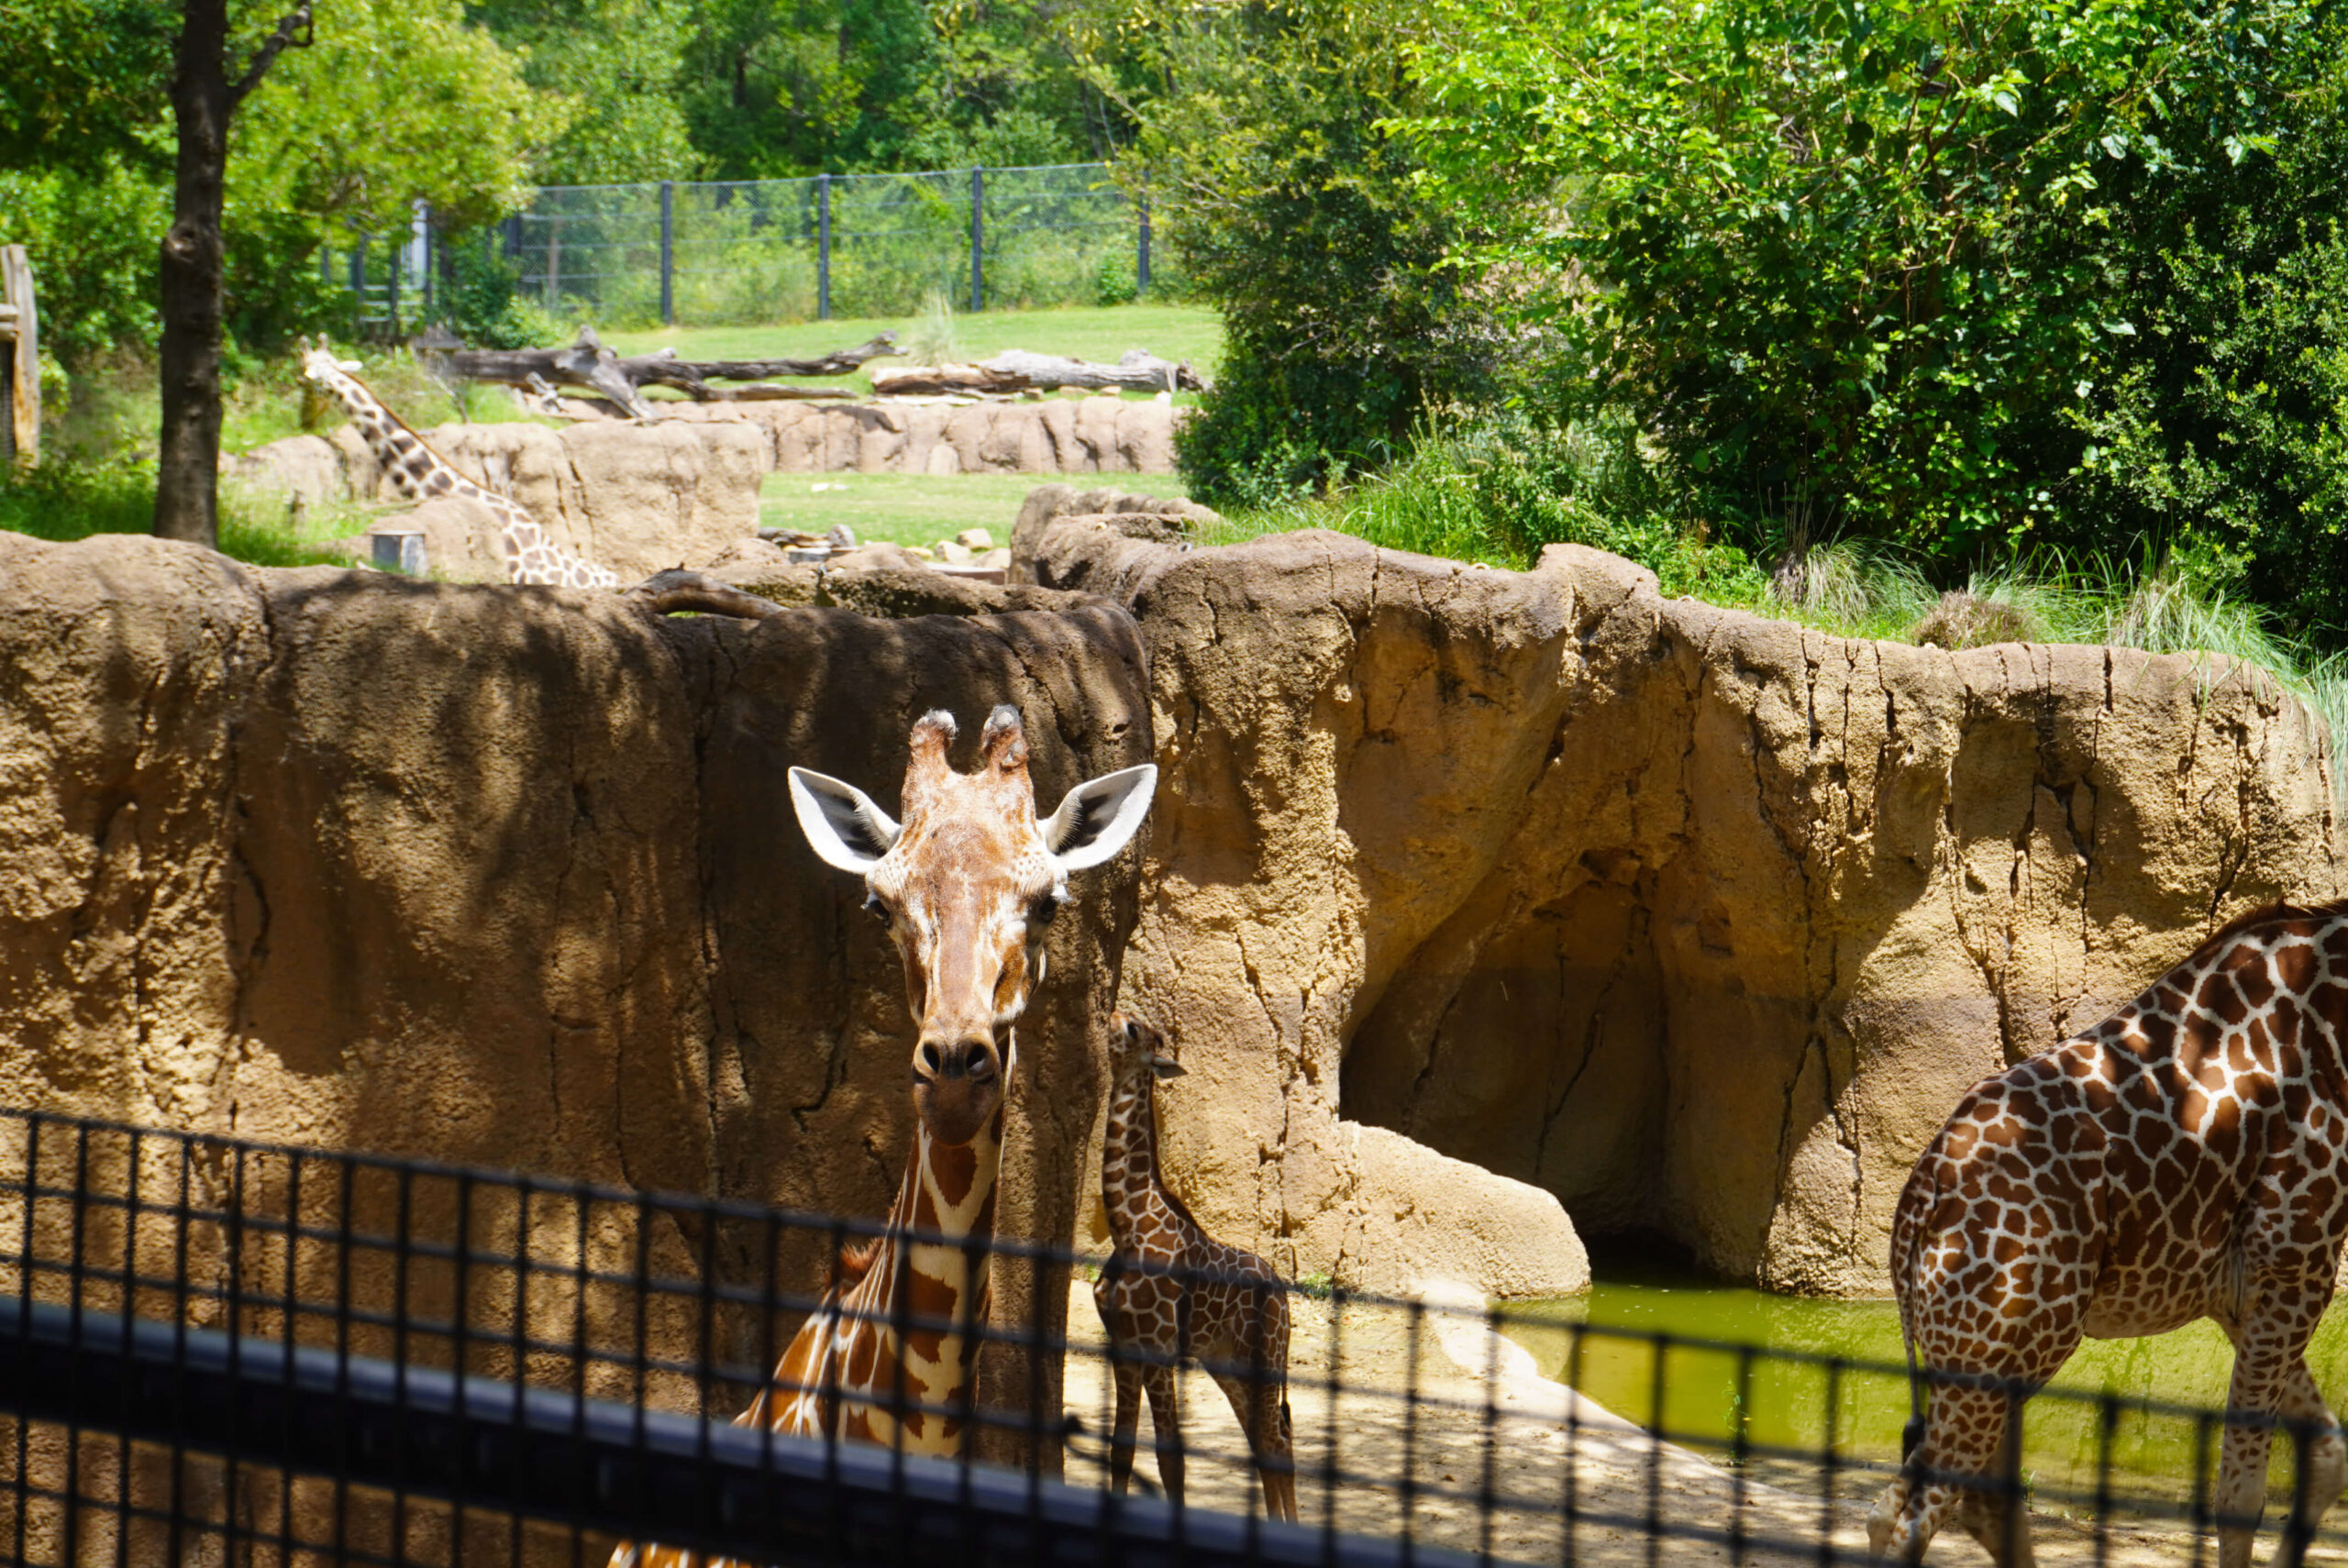 Image of giraffe in enclosure.